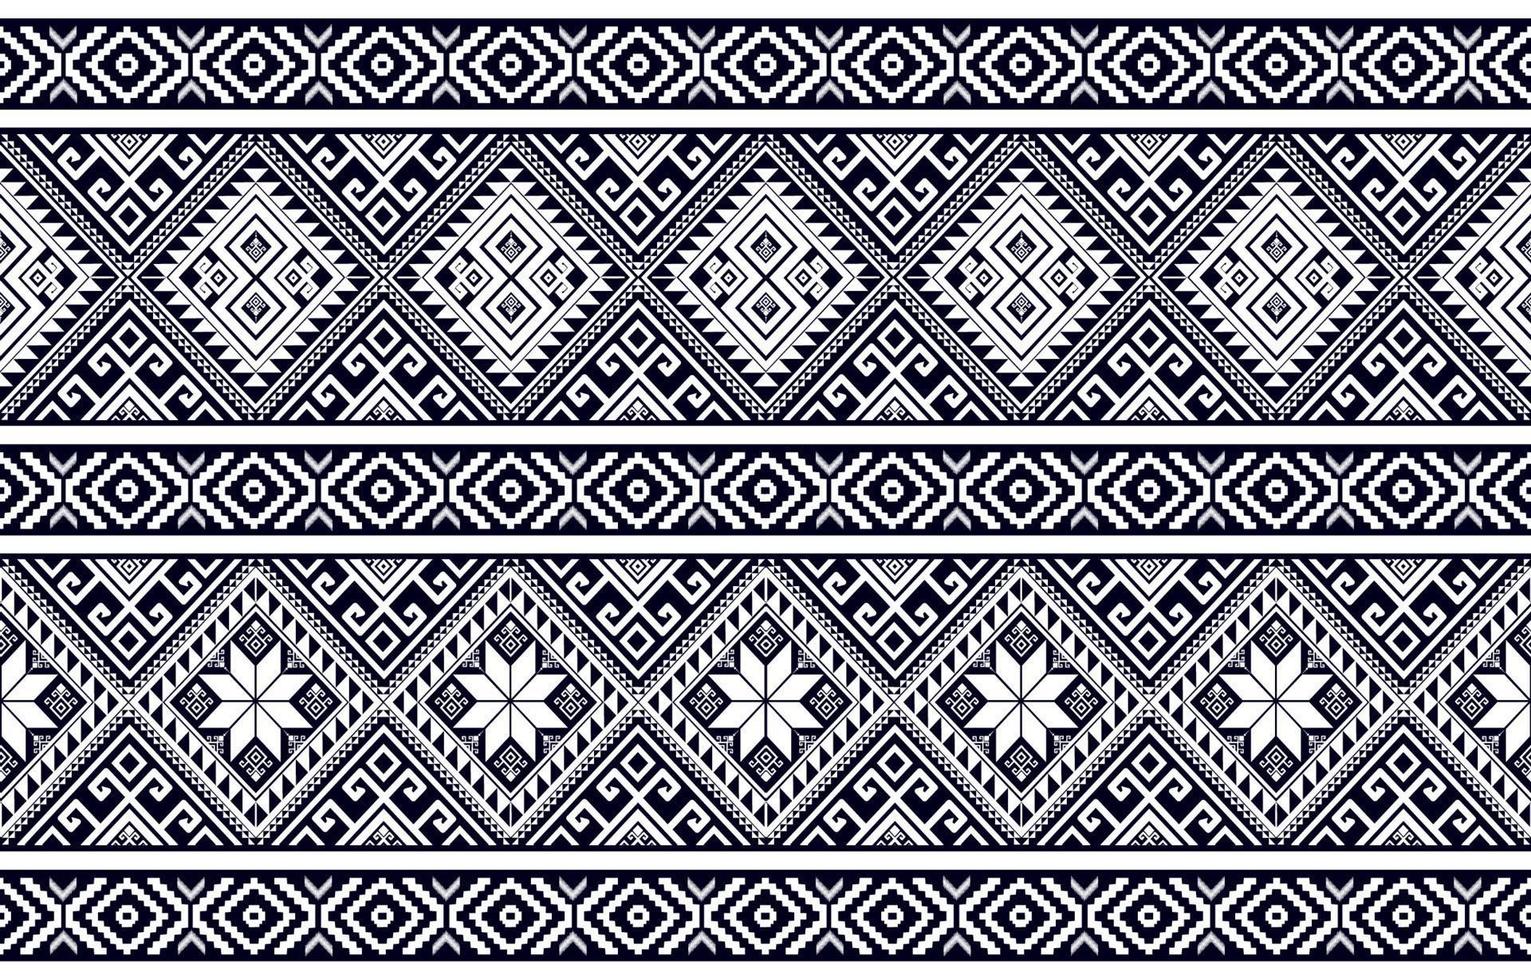 svart och vit abstrakt geometrisk etnisk mönster Västra, amerikan indisk uthyrning afrika. för matta, tapeter, kläder, inslagning, batik, tyg, kakel, bakgrund, vektor illustration. broderi stil.